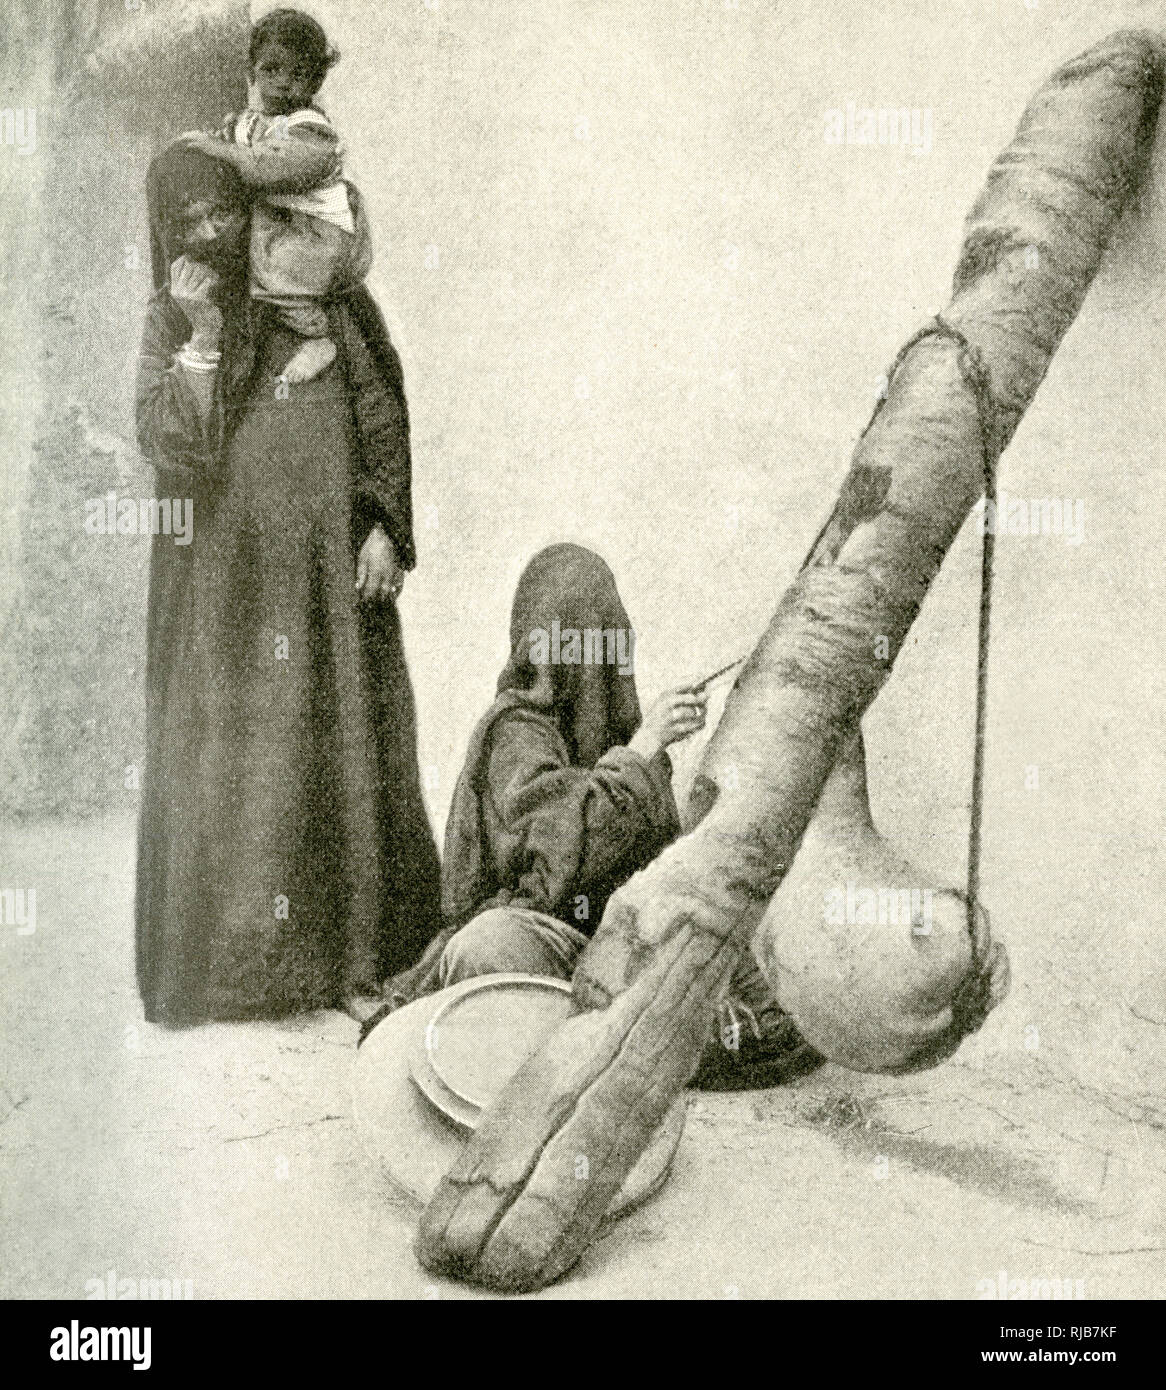 Arab woman with goatskin butter churn, near Cairo, Egypt Stock Photo